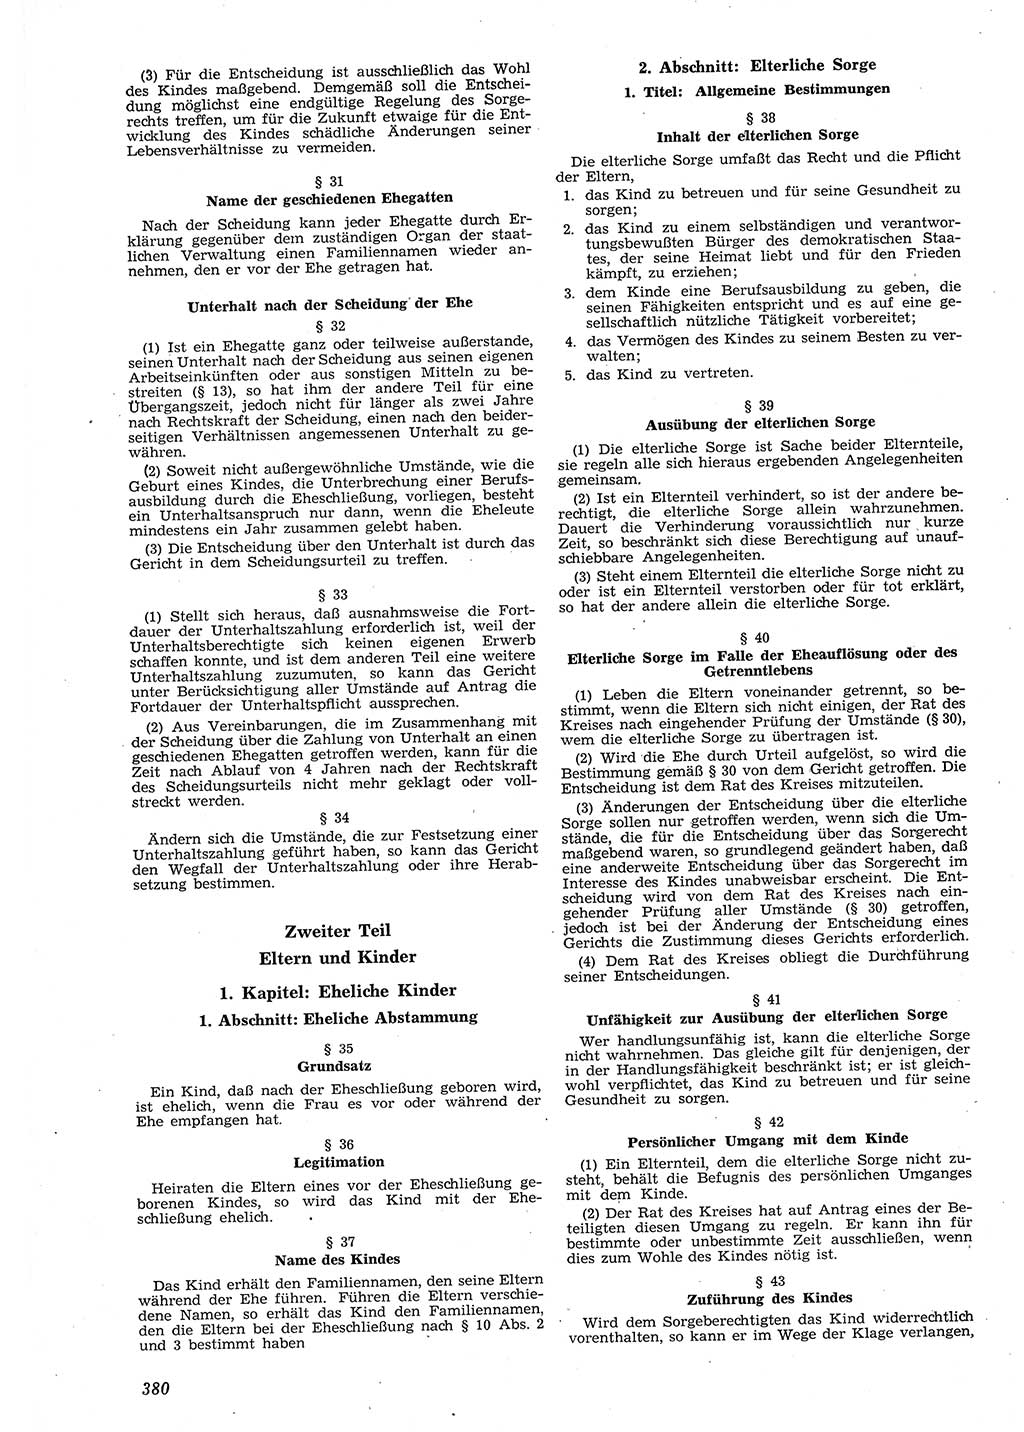 Neue Justiz (NJ), Zeitschrift für Recht und Rechtswissenschaft [Deutsche Demokratische Republik (DDR)], 8. Jahrgang 1954, Seite 380 (NJ DDR 1954, S. 380)